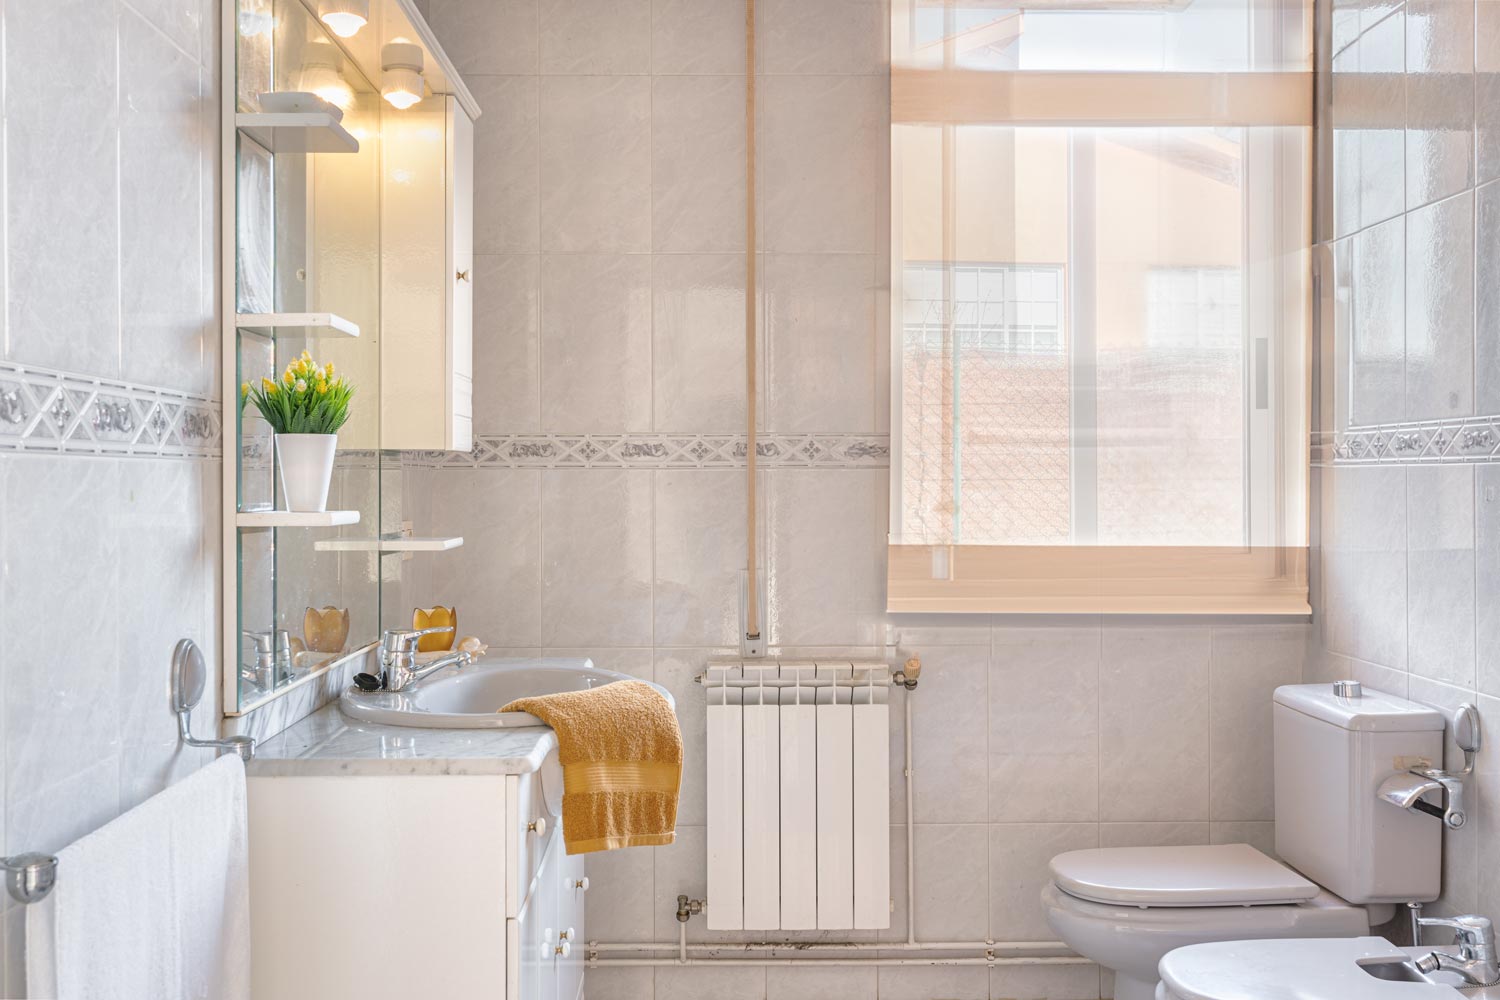 Baño luminoso con azulejos en tonos beige, espejo amplio y ventana que ofrece luz natural.